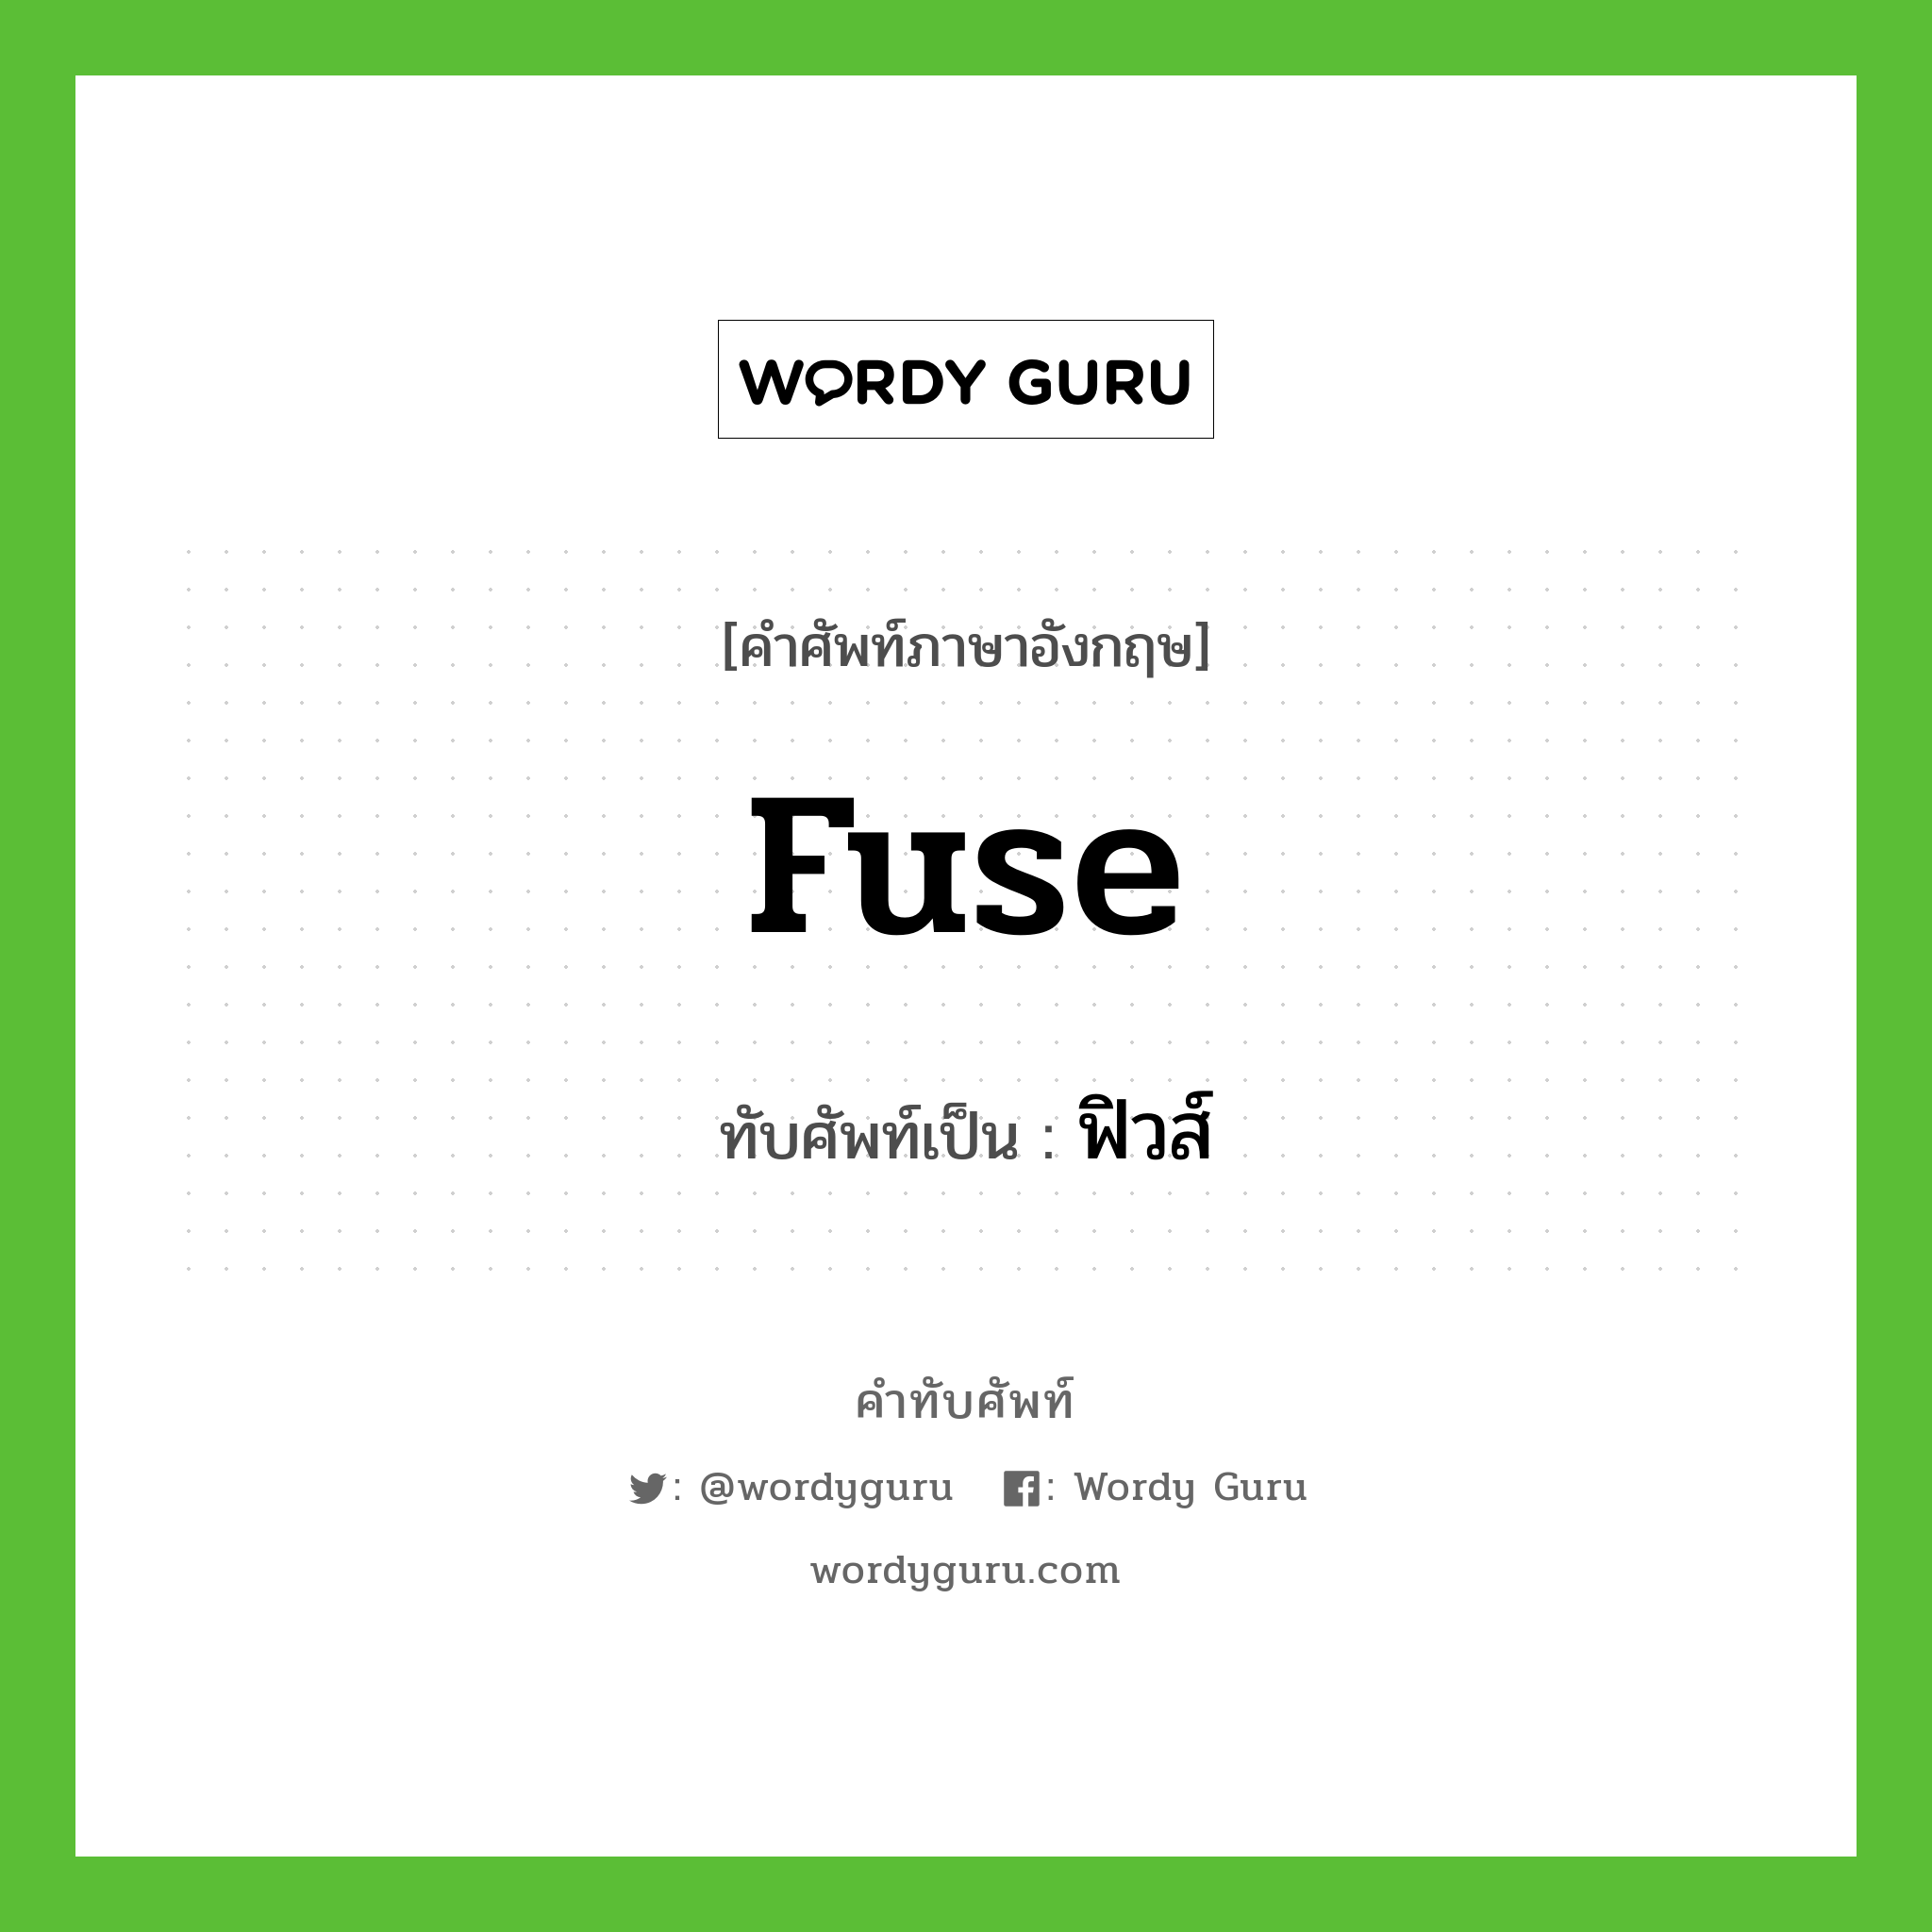 fuse เขียนเป็นคำไทยว่าอะไร?, คำศัพท์ภาษาอังกฤษ fuse ทับศัพท์เป็น ฟิวส์